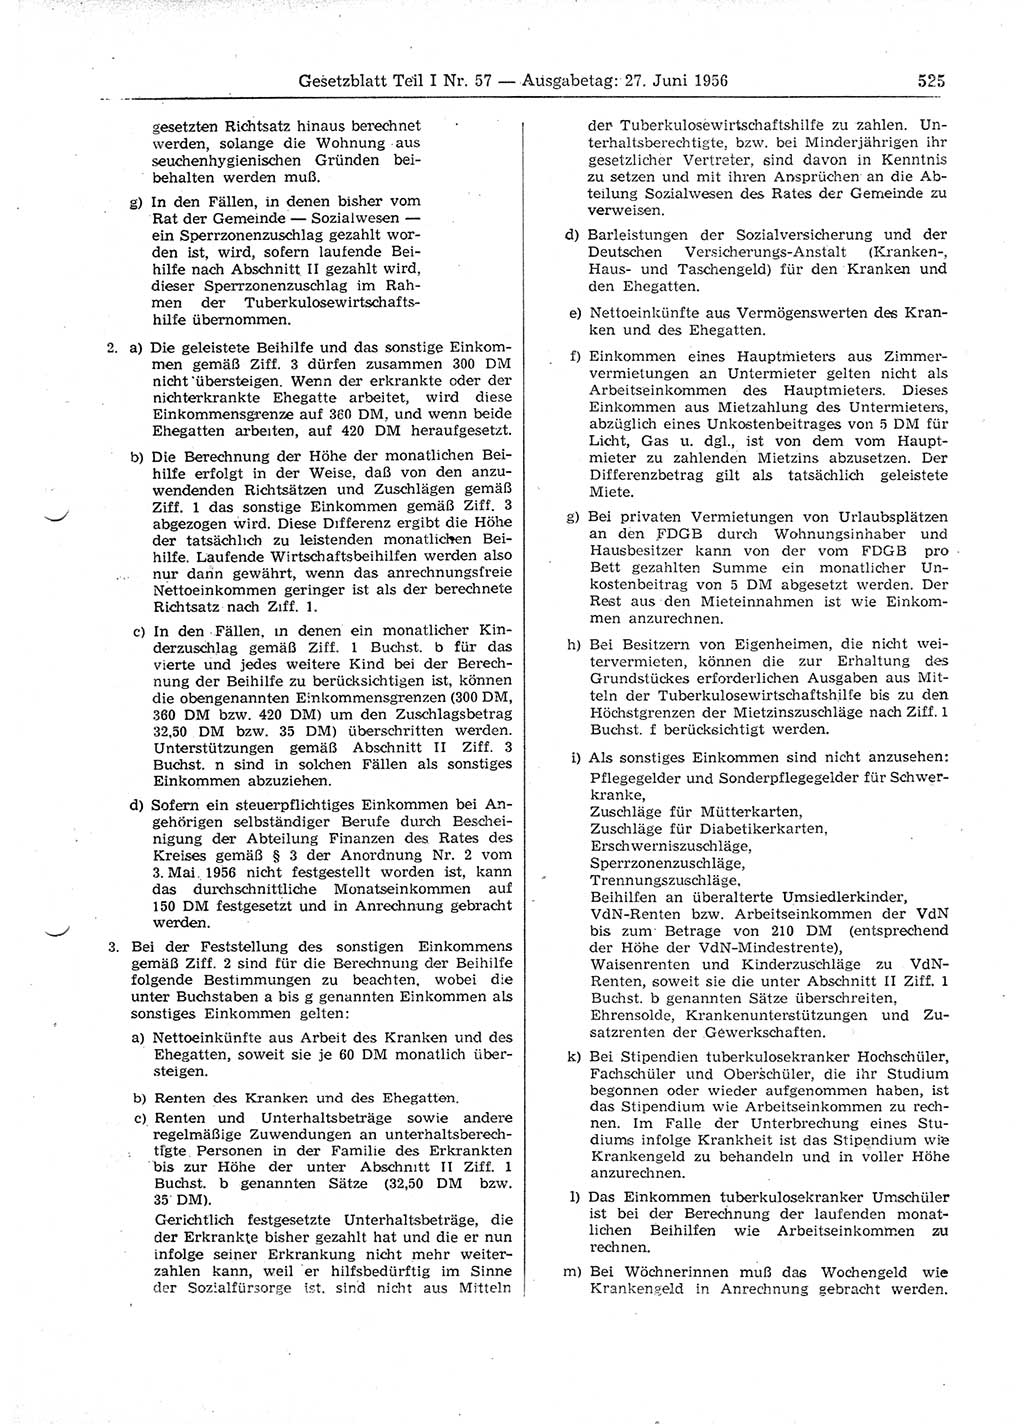 Gesetzblatt (GBl.) der Deutschen Demokratischen Republik (DDR) Teil Ⅰ 1956, Seite 525 (GBl. DDR Ⅰ 1956, S. 525)